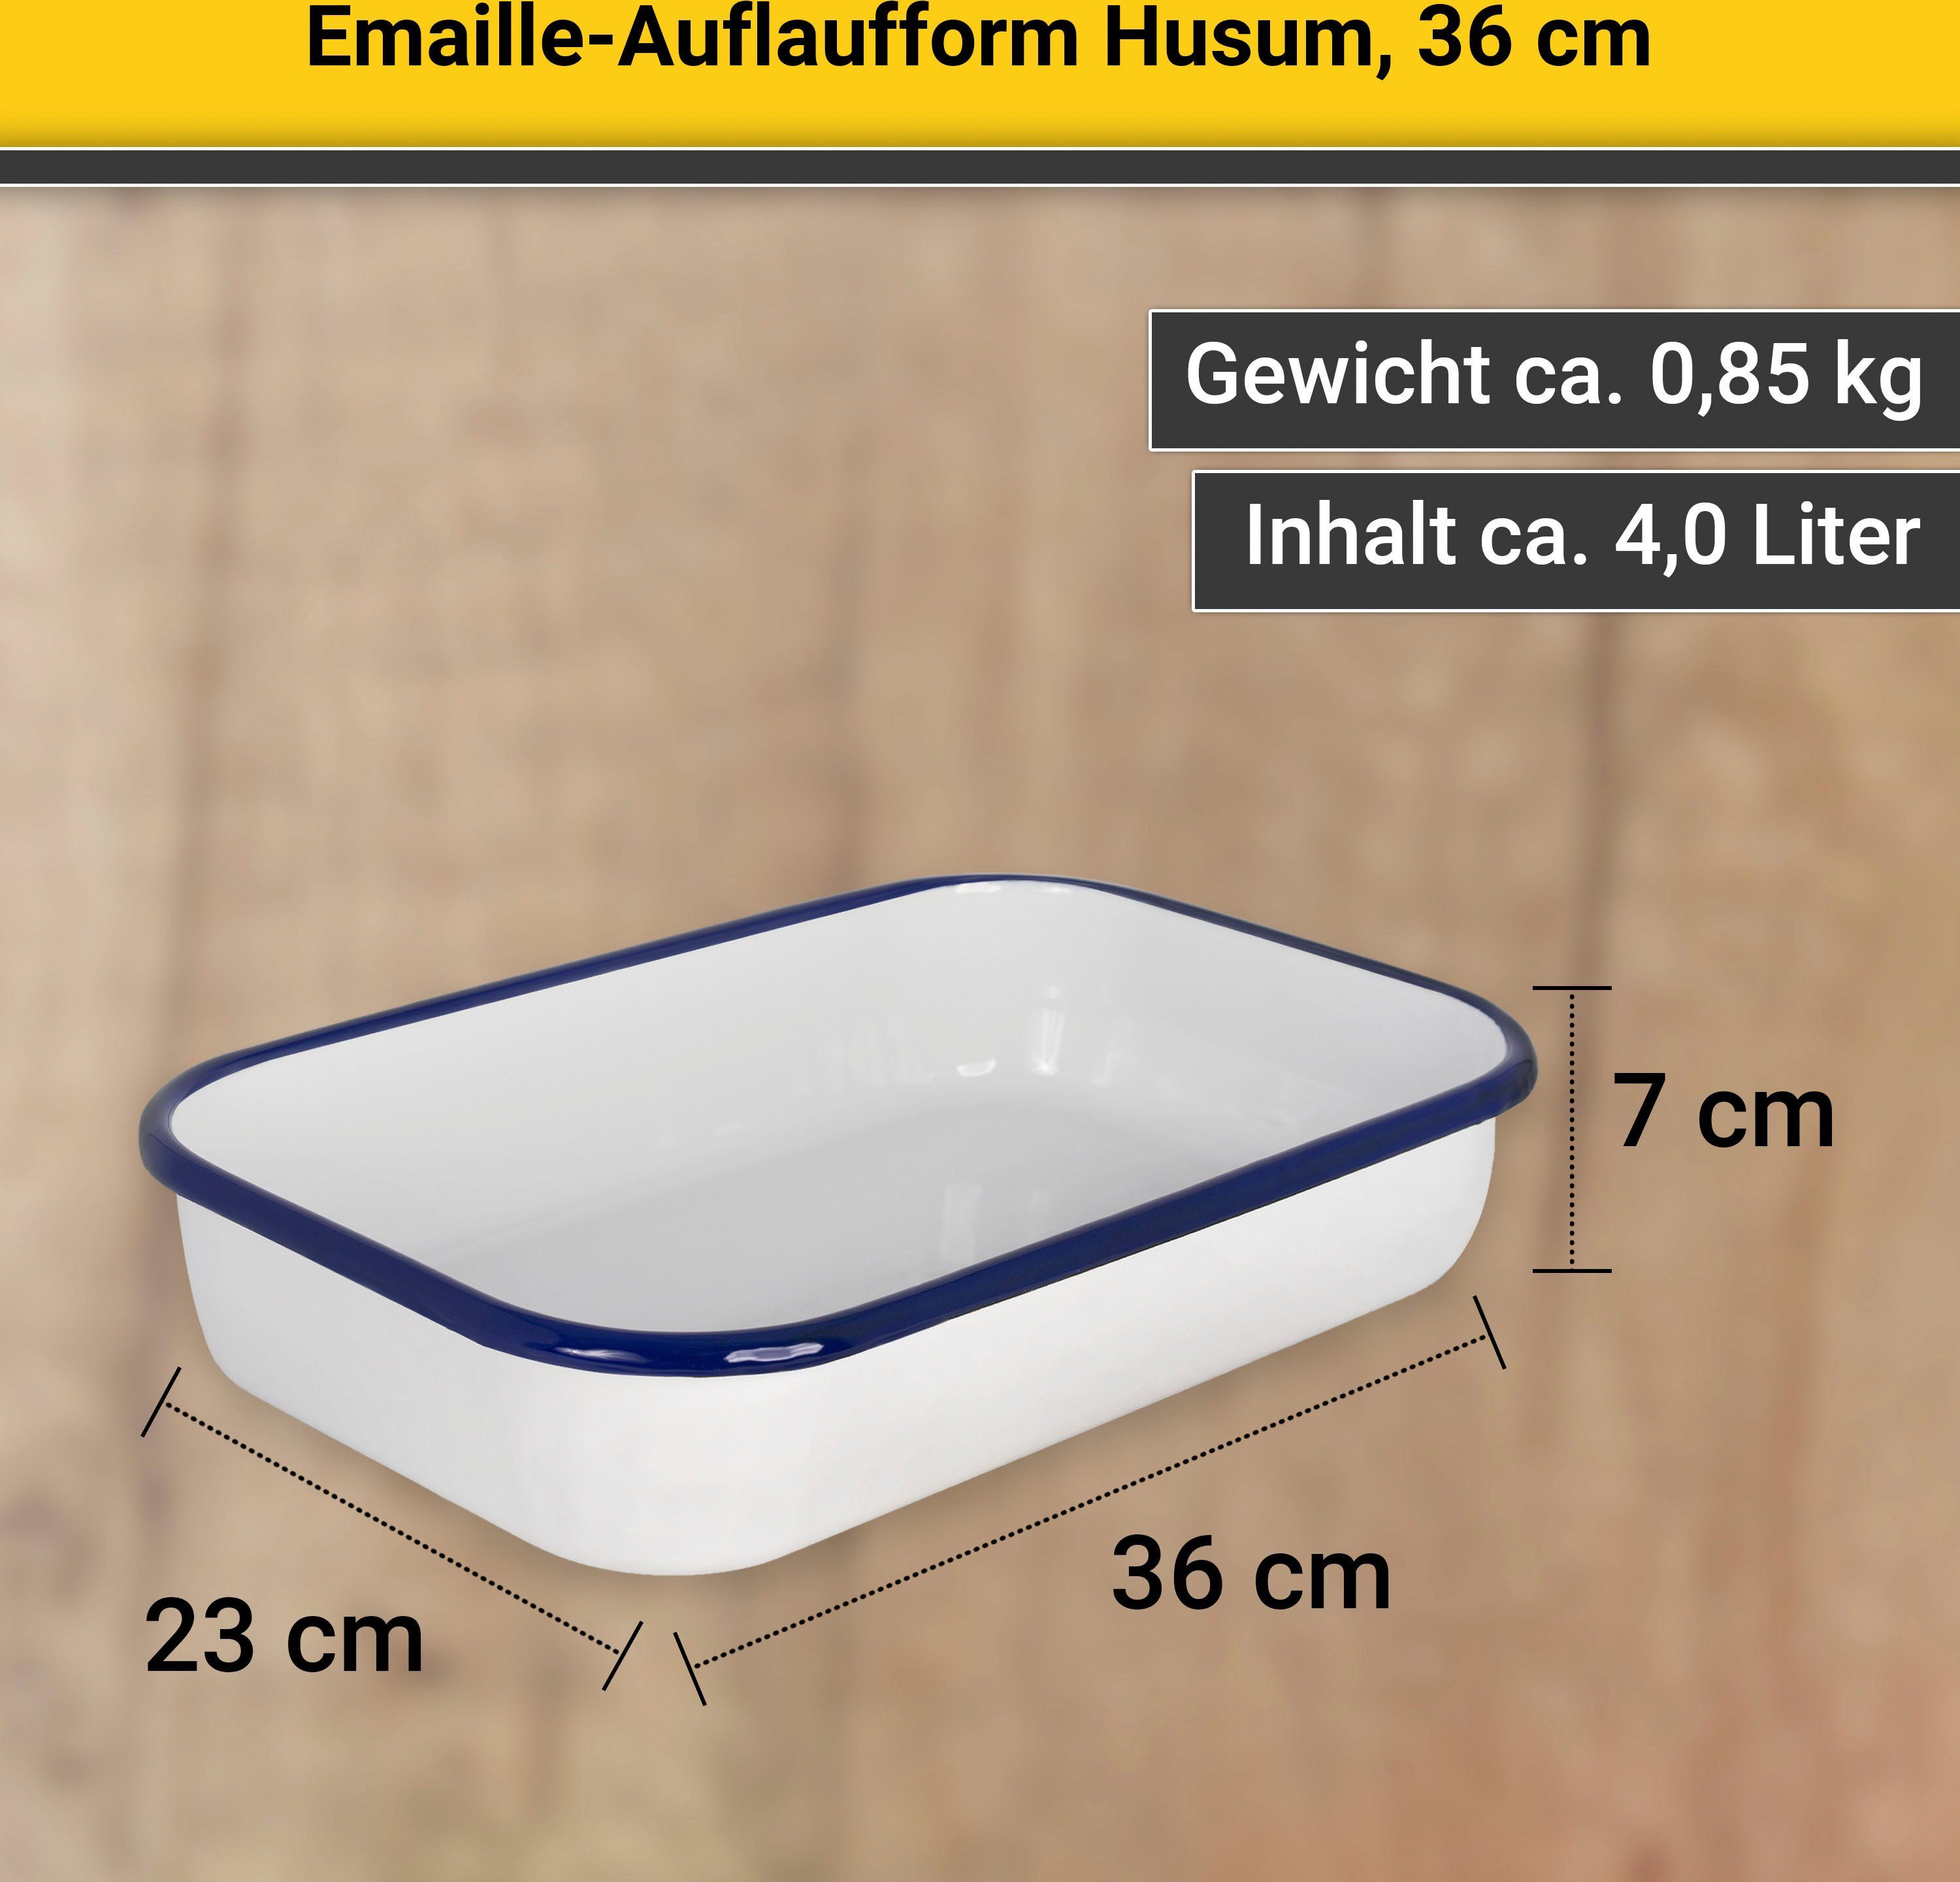 Krüger Auflaufform Husum, Emaille, cm 36